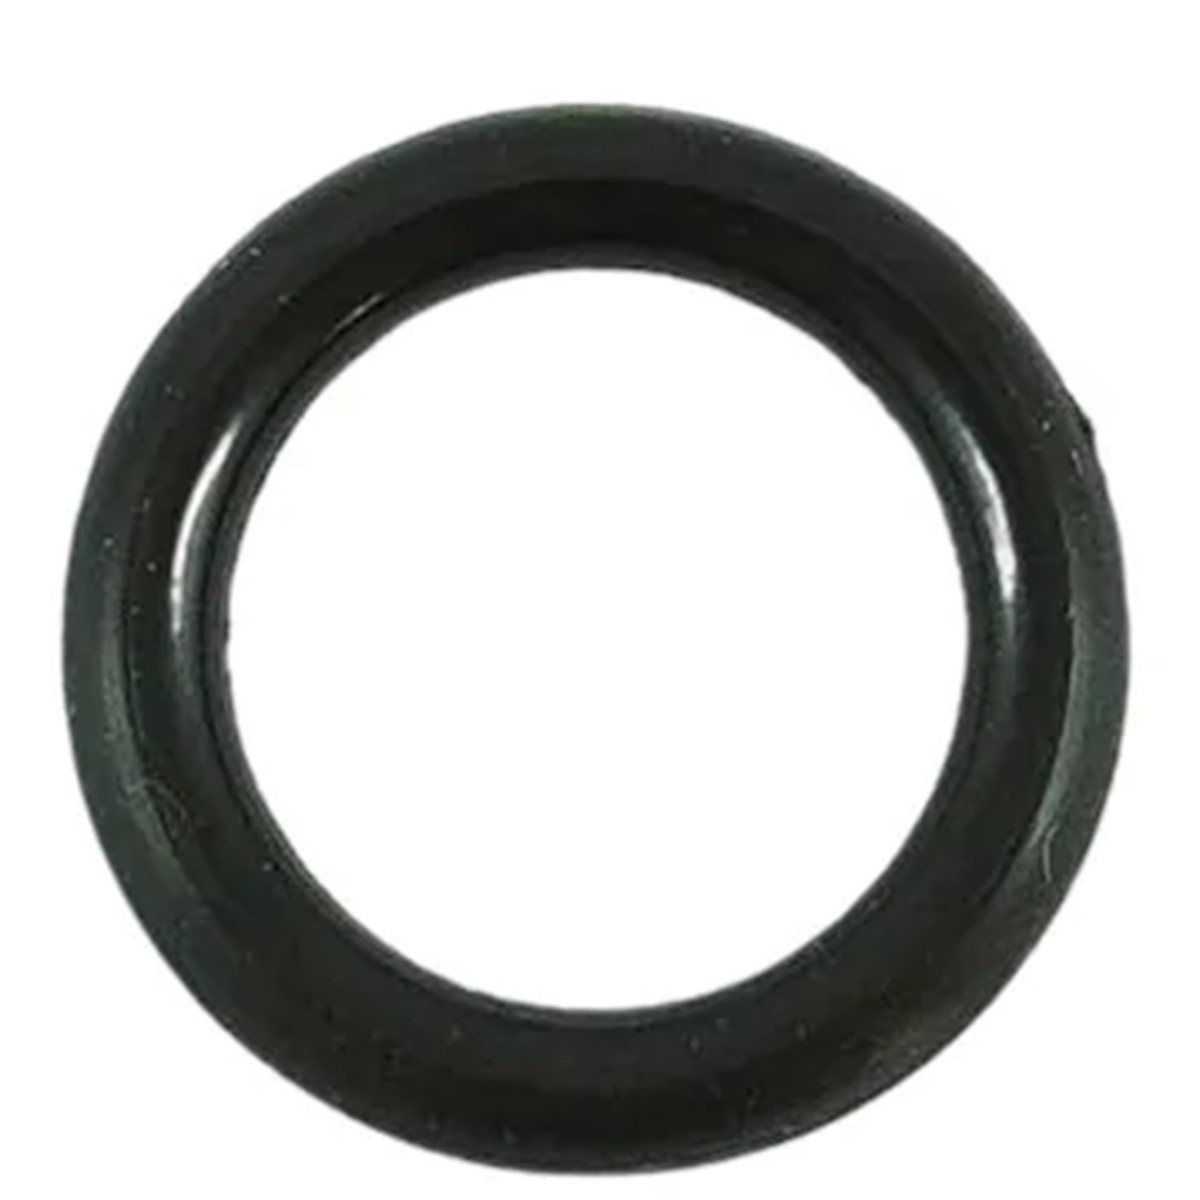 O-ring 10.80 x 2.40 x 15.60 mm / Q0650005 / 40012803